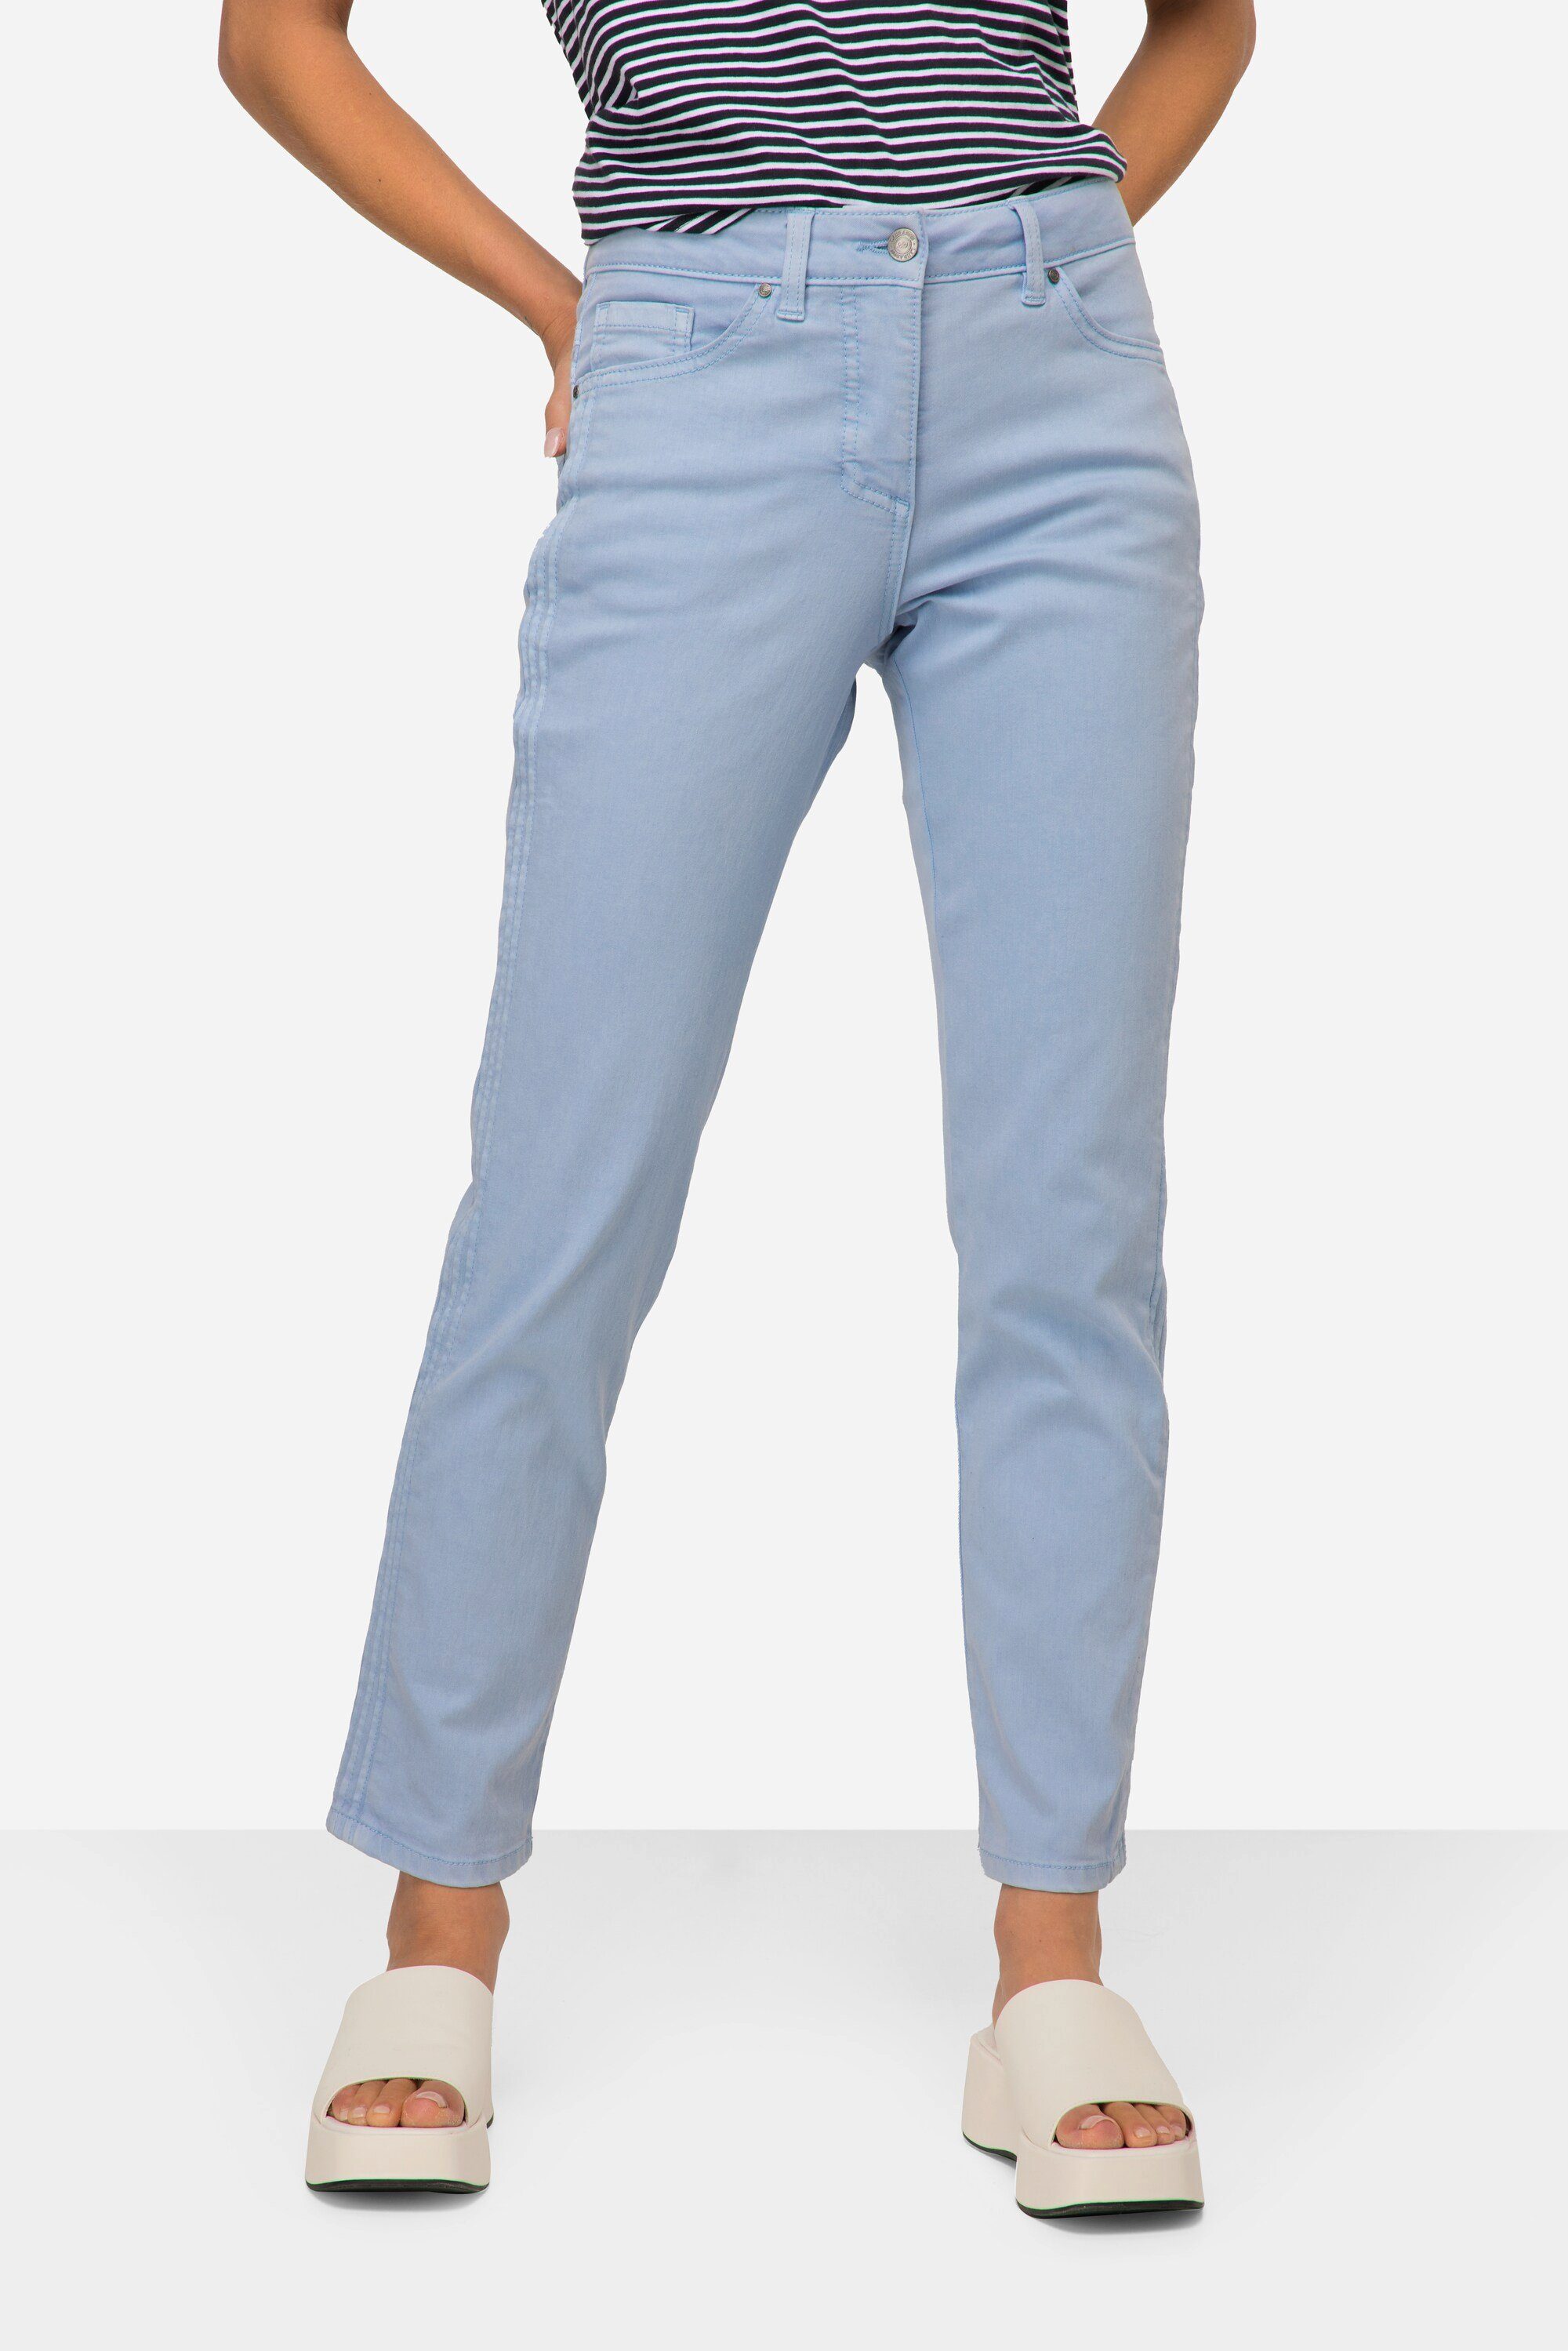 Laurasøn 5-Pocket-Jeans Jeans Tina Passform hellblau gerade Zierfalten seitliche